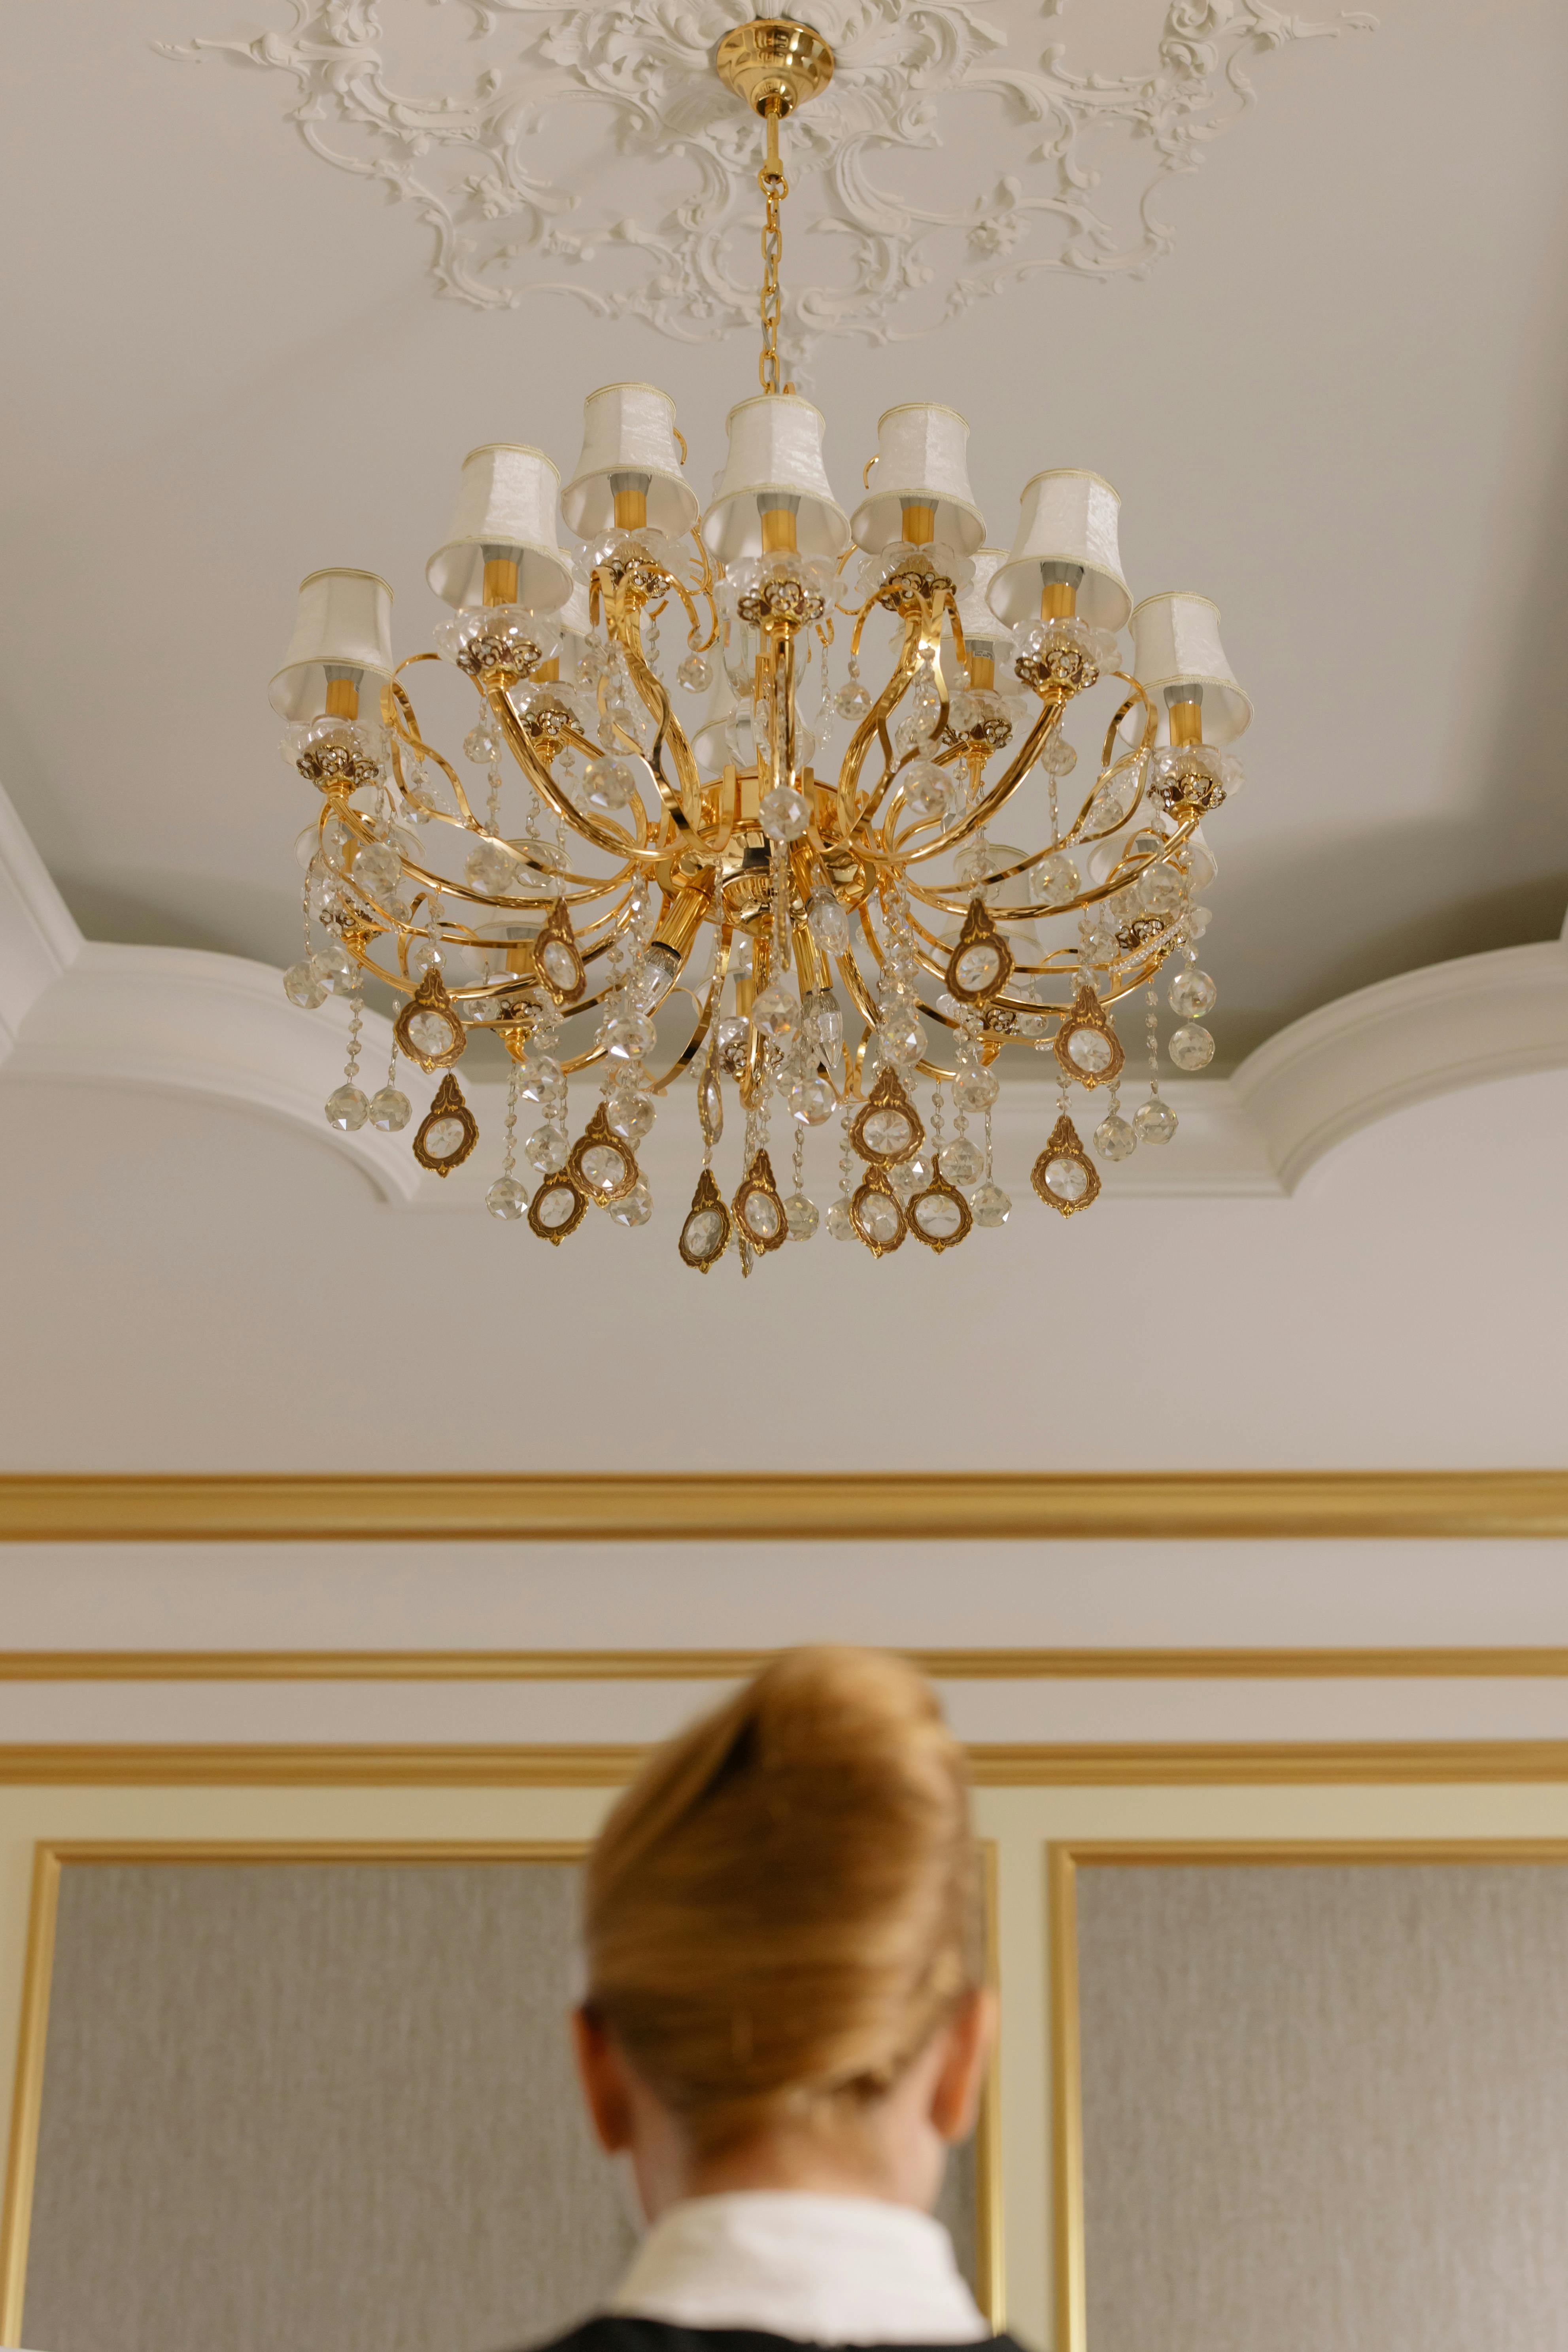 Mujer de pie bajo la lámpara de araña de una habitación de hotel | Fuente: Pexels